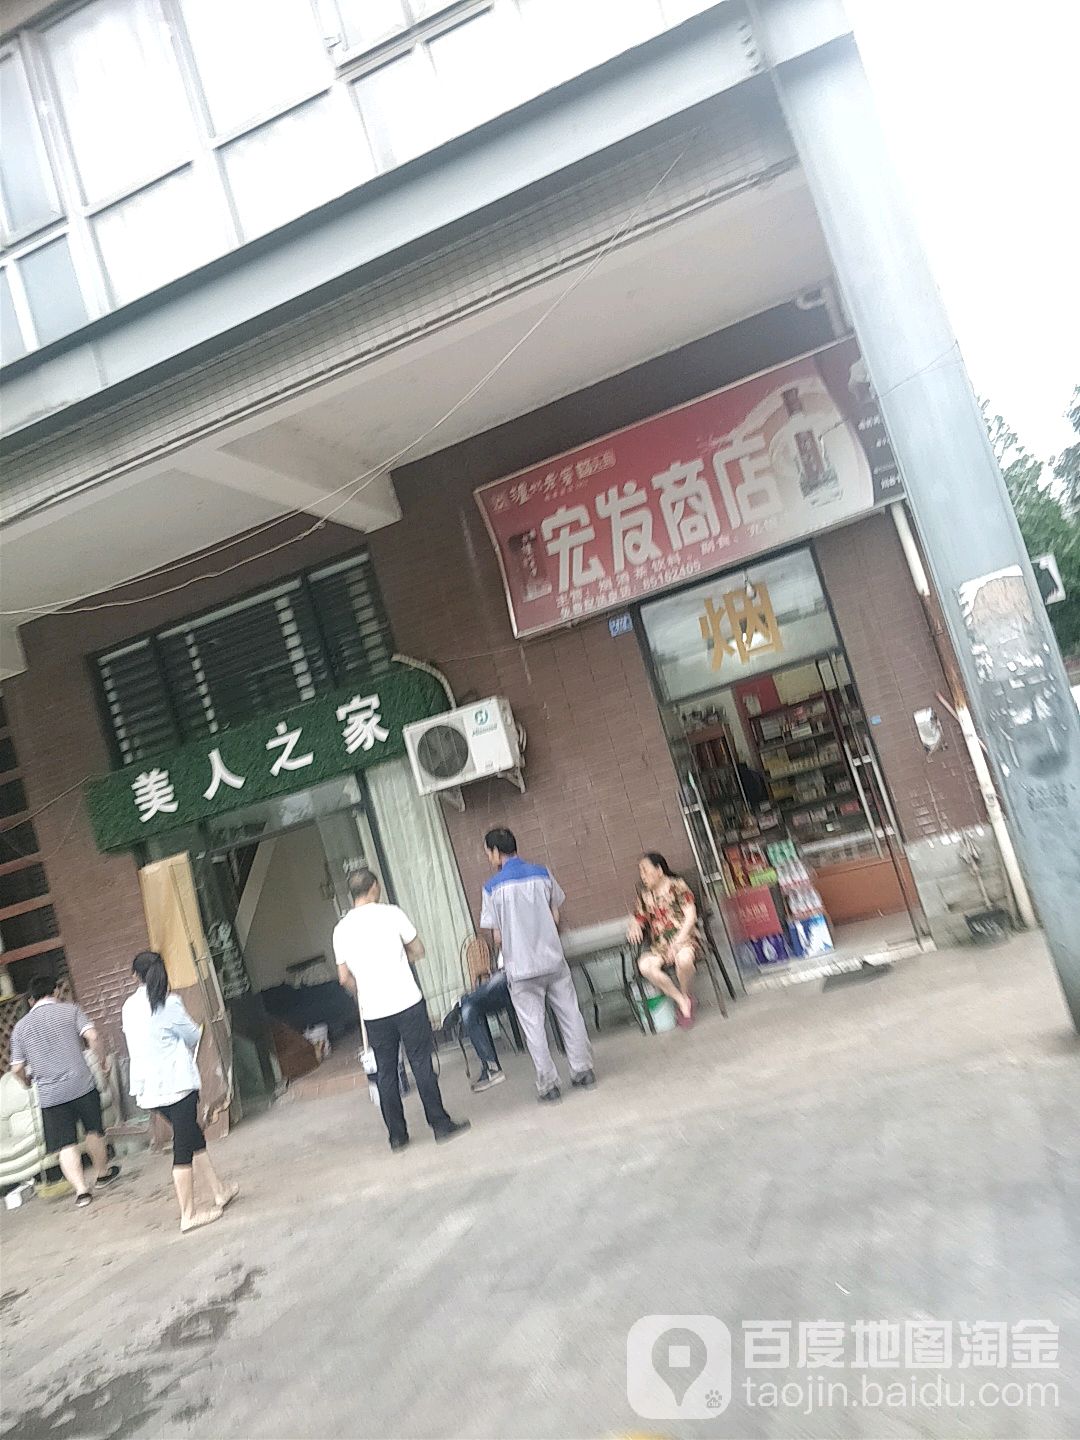 宏發商店(中環路紫瑞大道段店)